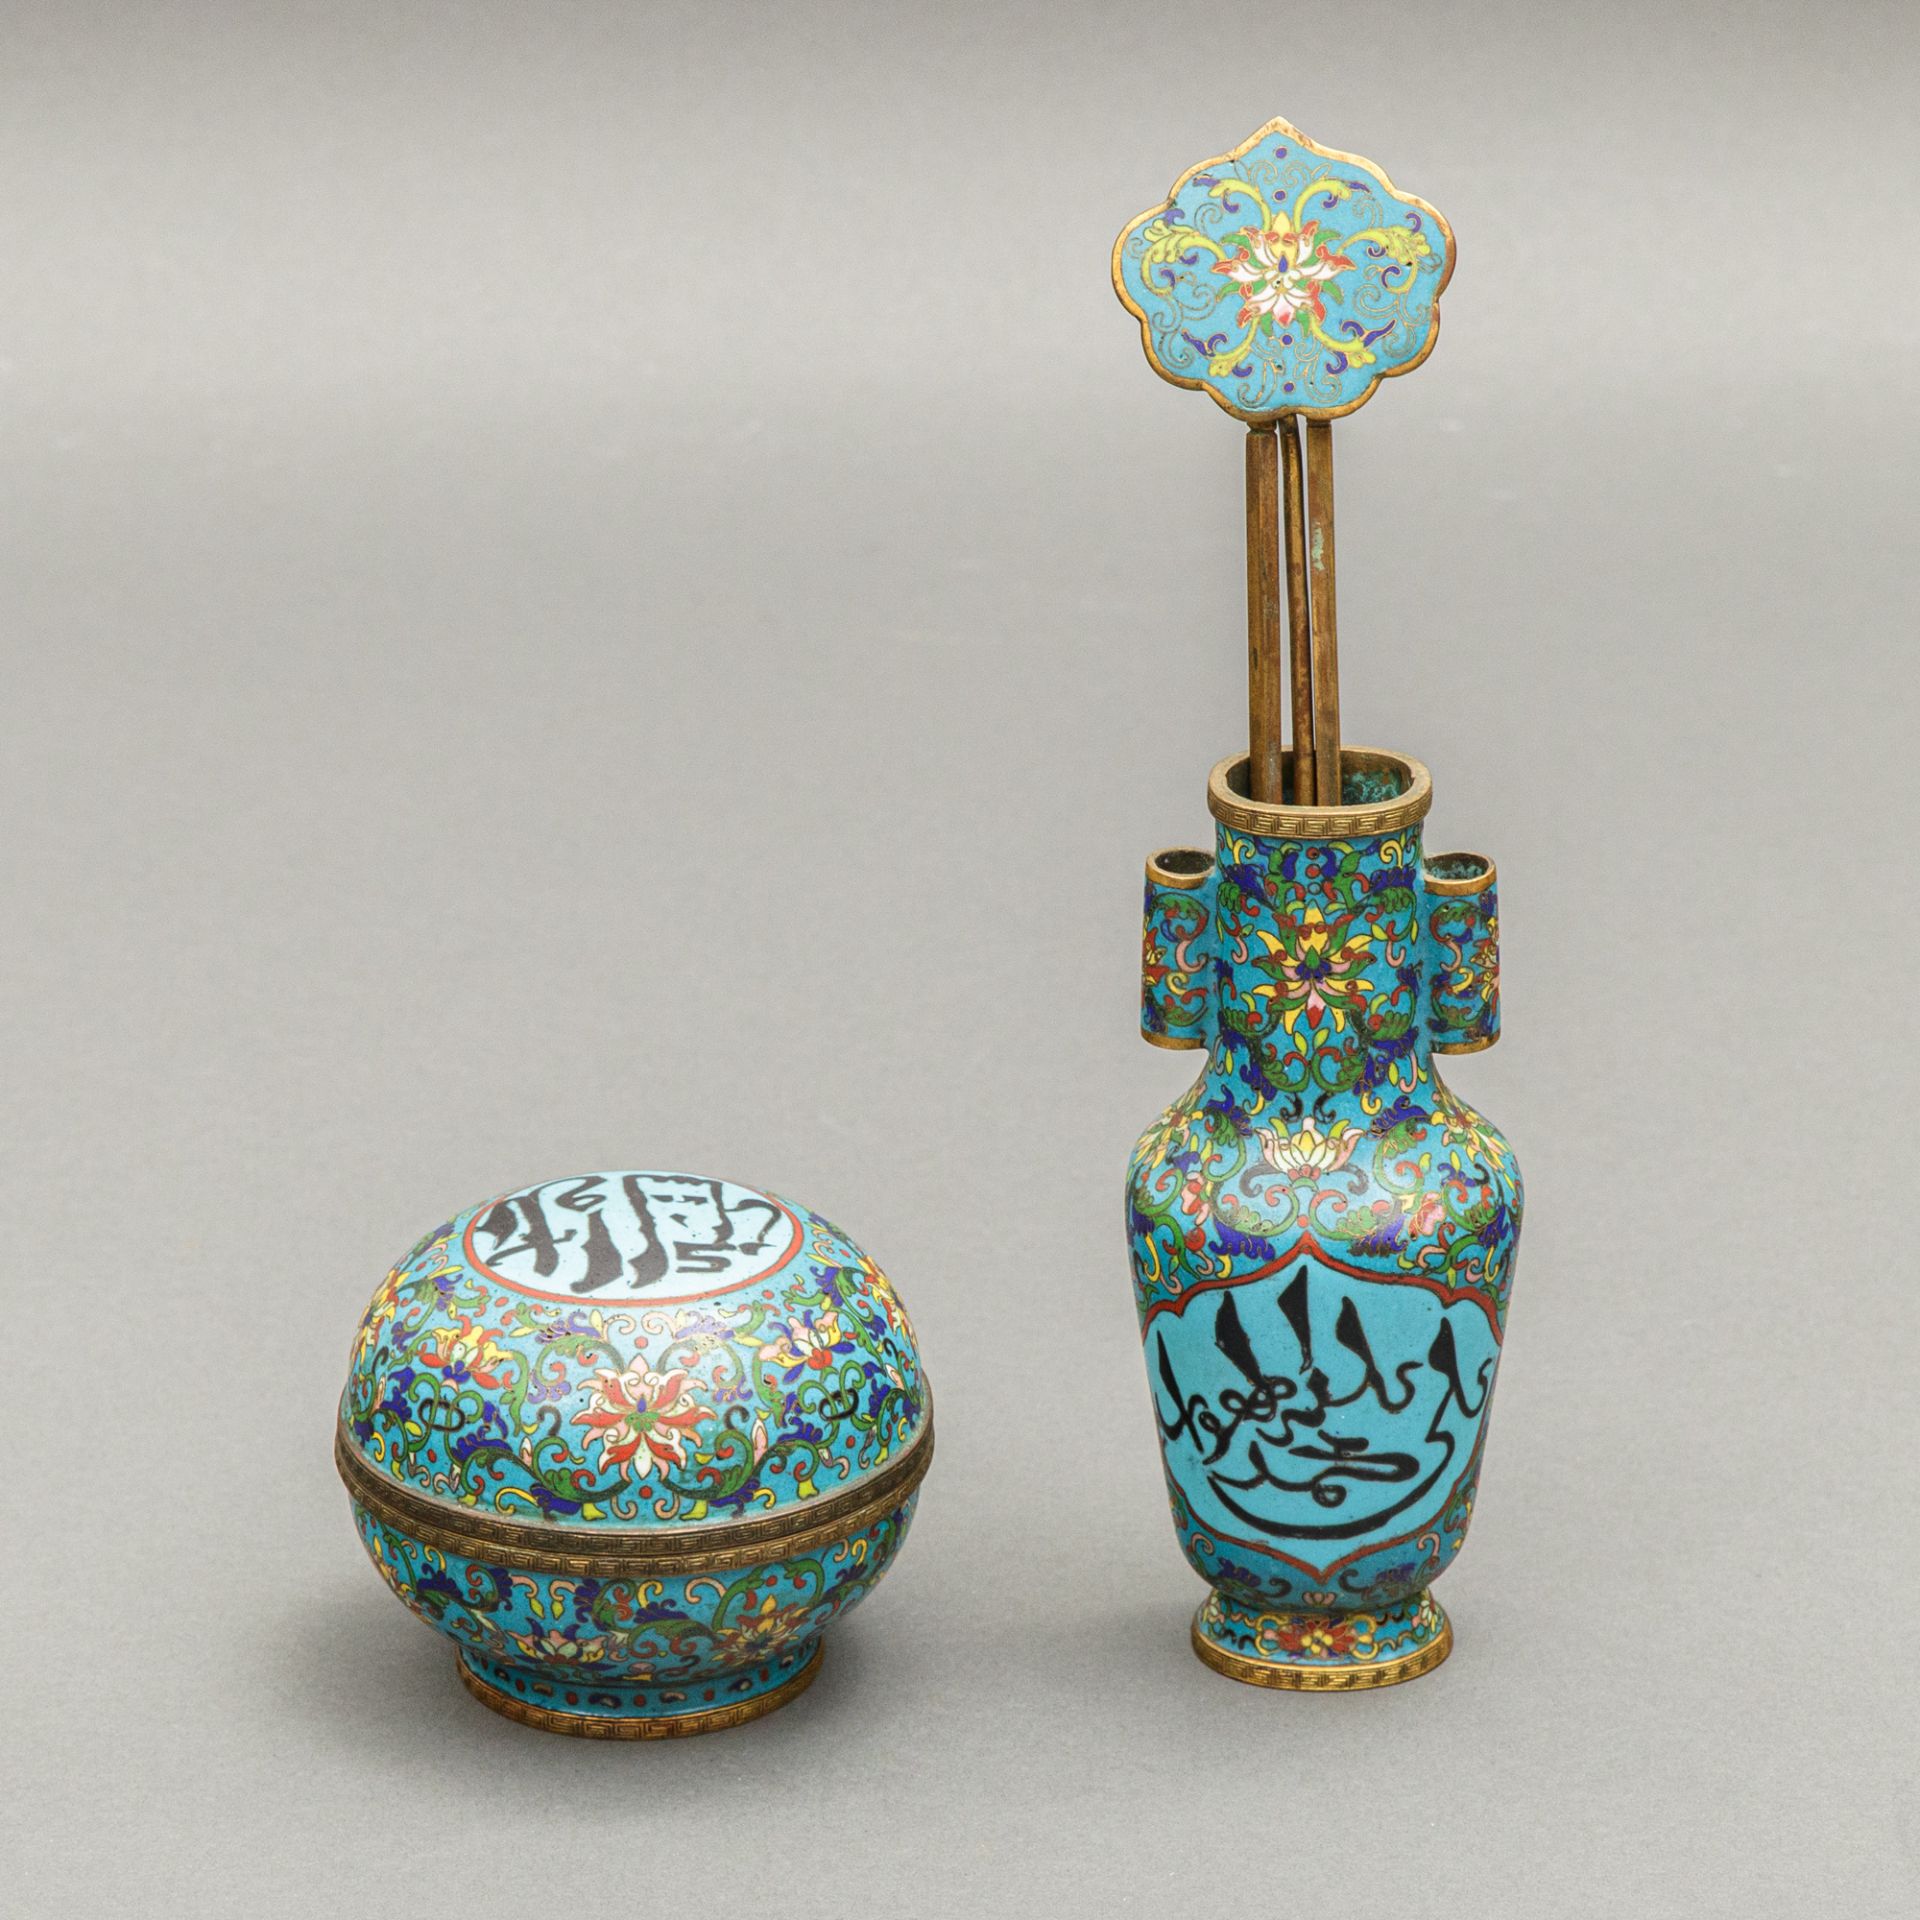 Deckeldose und Vase im sino-islamischen Stil, China, Qing Dynastie, 1644-1911